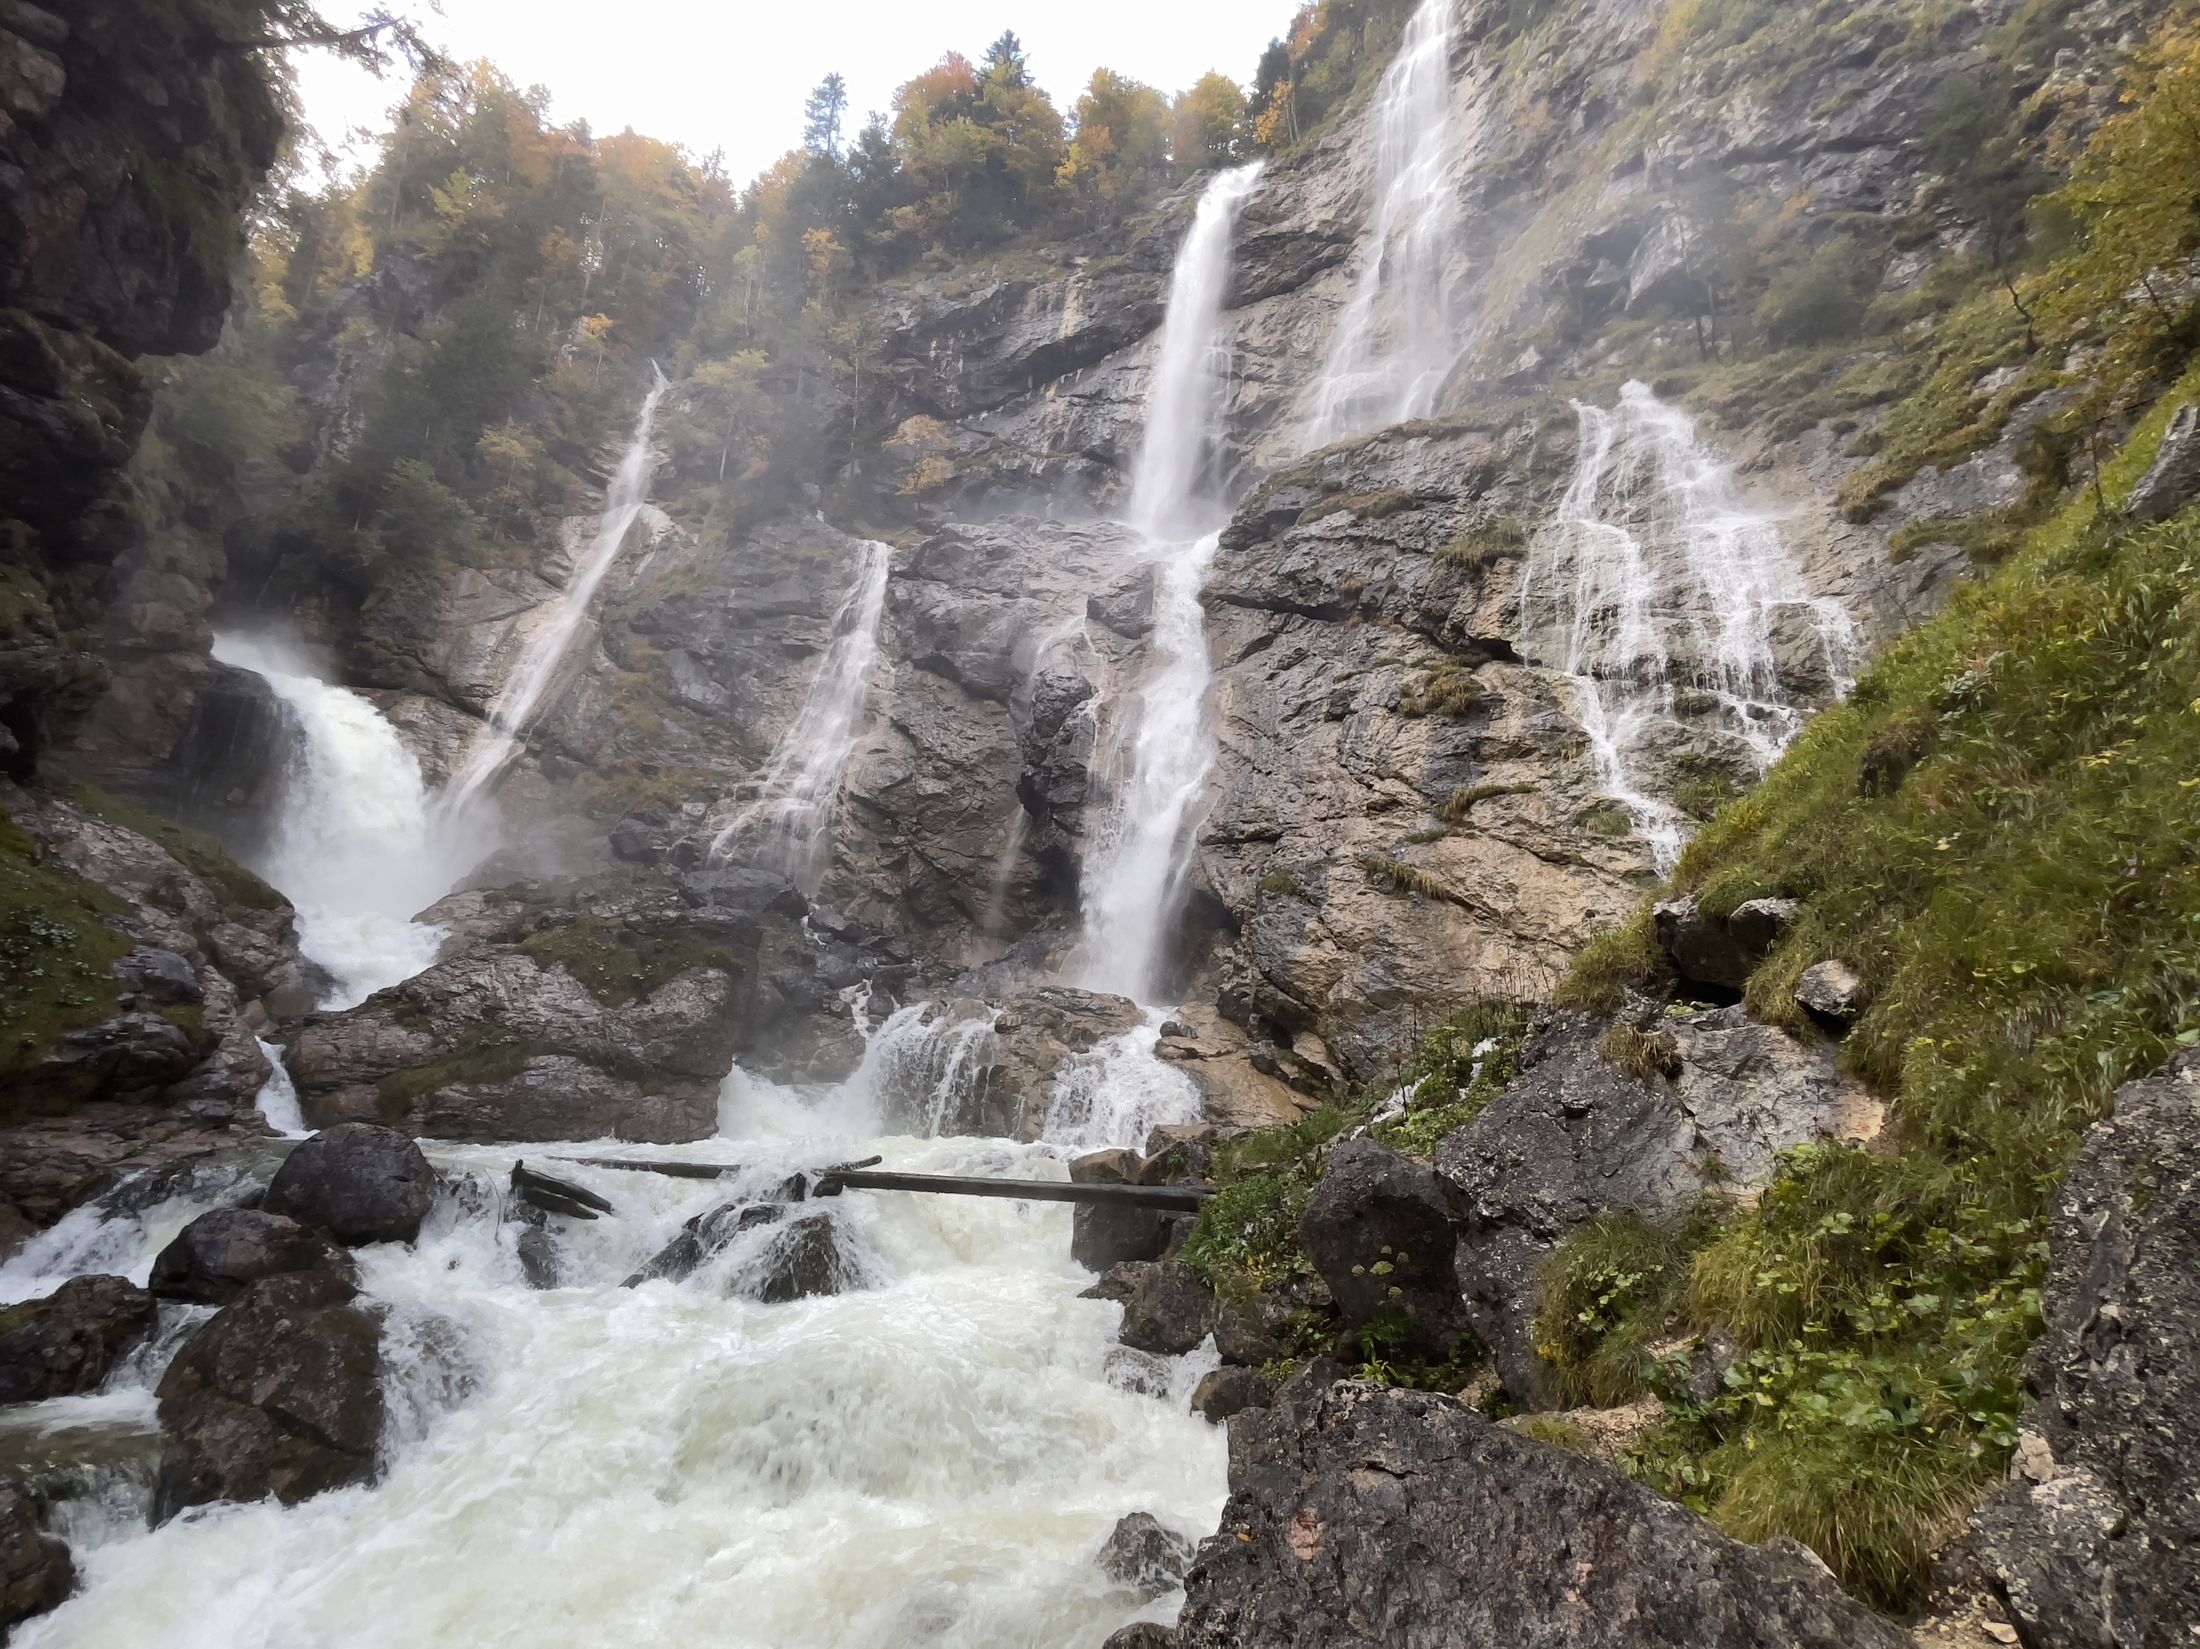 Waldbastrub waterfall